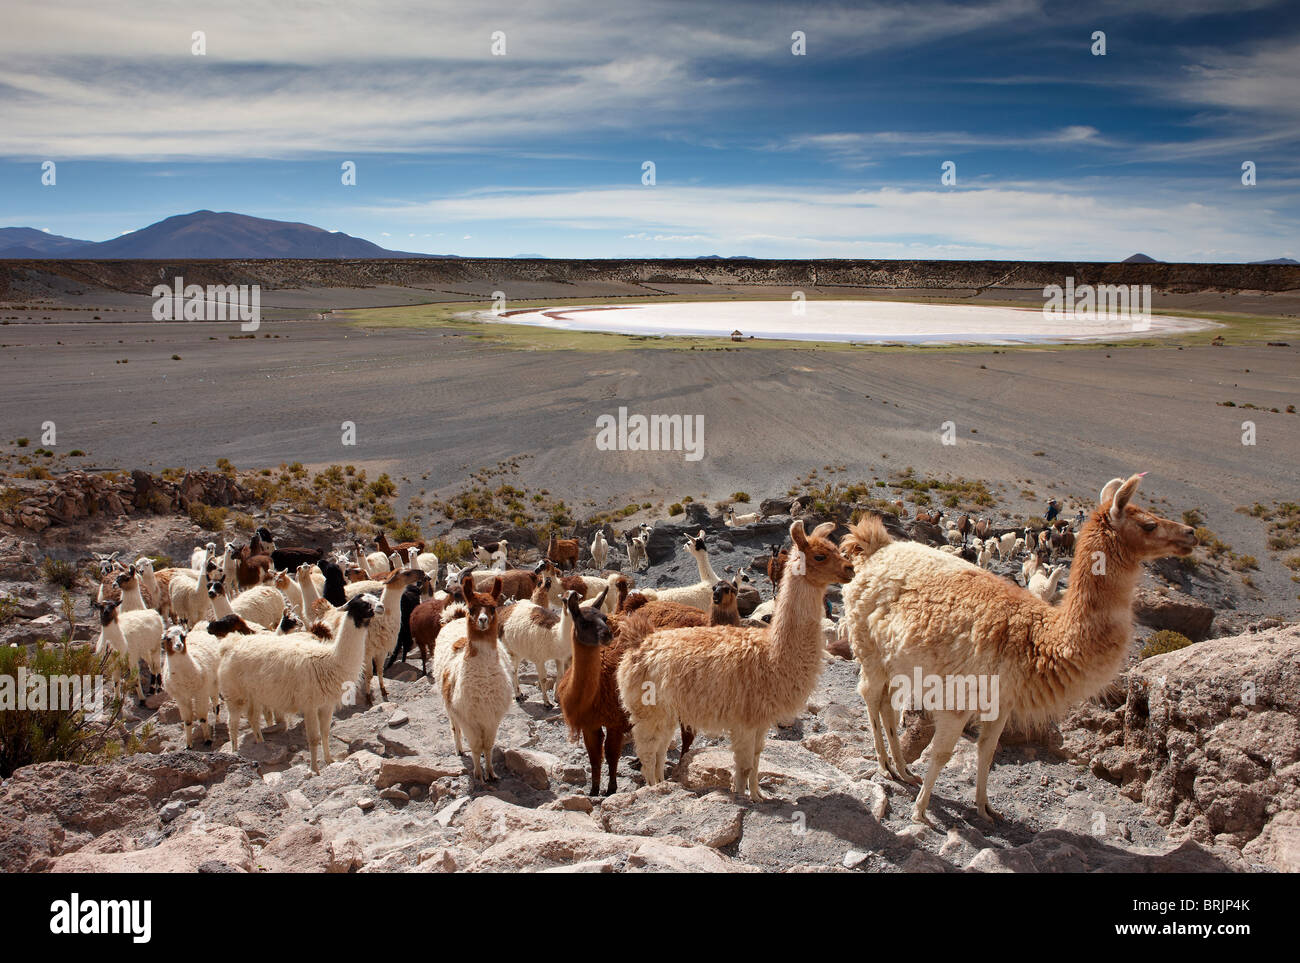 eine Herde von Lamas in einem vulkanischen Krater auf dem Altiplano, Nr. Castiloma, Bolivien Stockfoto